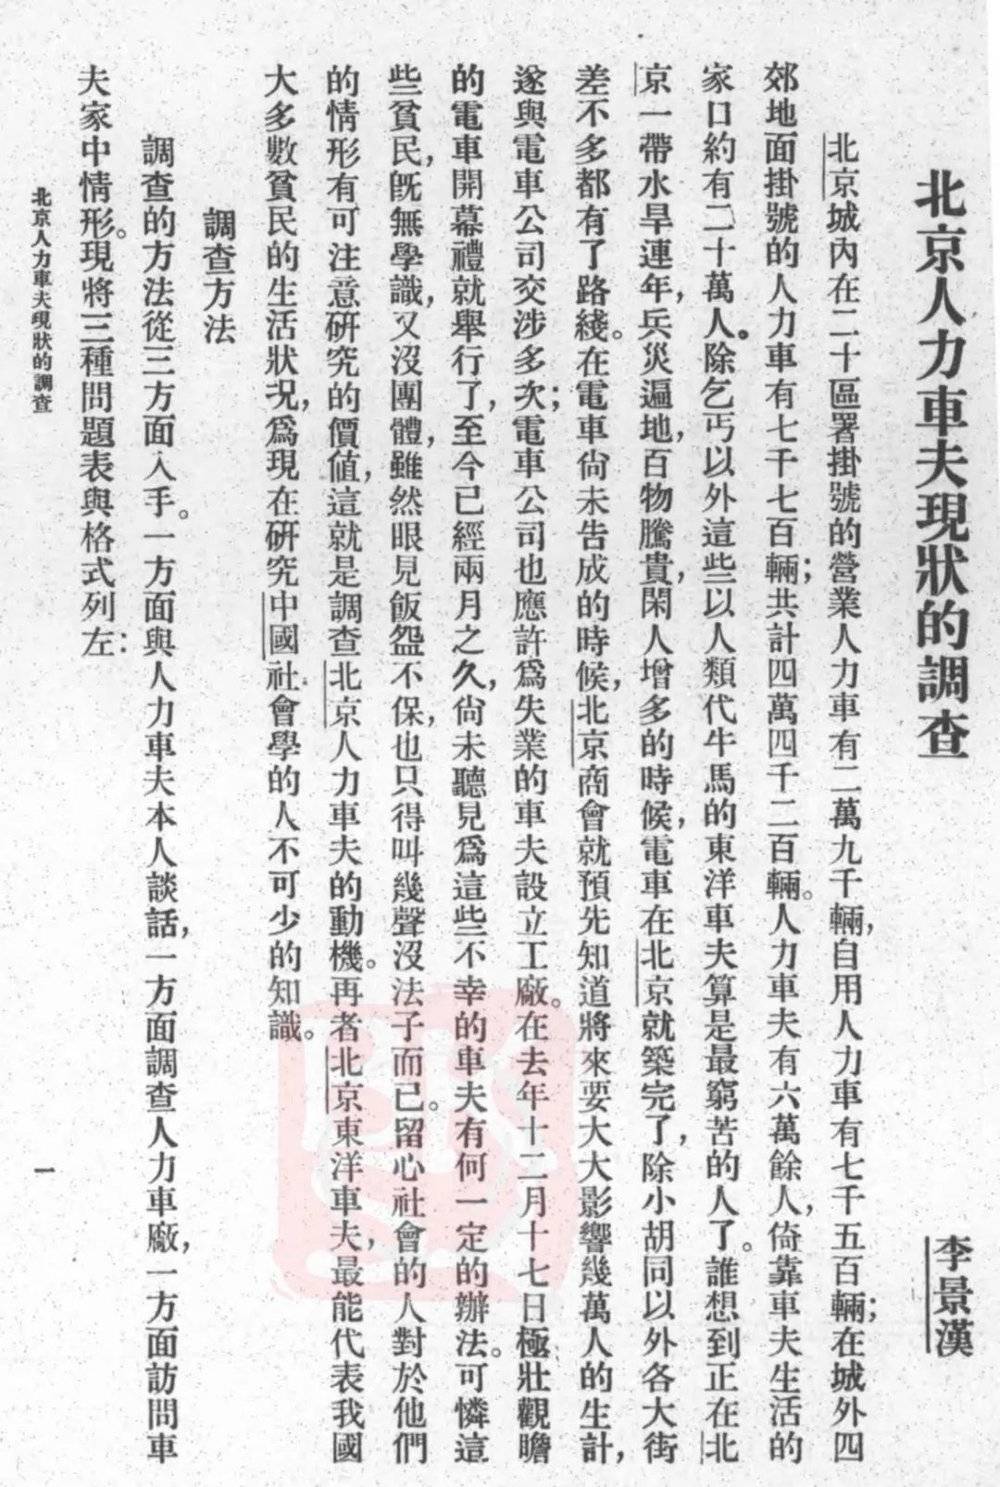 1925年，李景林作《北京人力车夫现状的调查》，发表于《社会学杂志》（来源：ucass.edu.cn）<br>